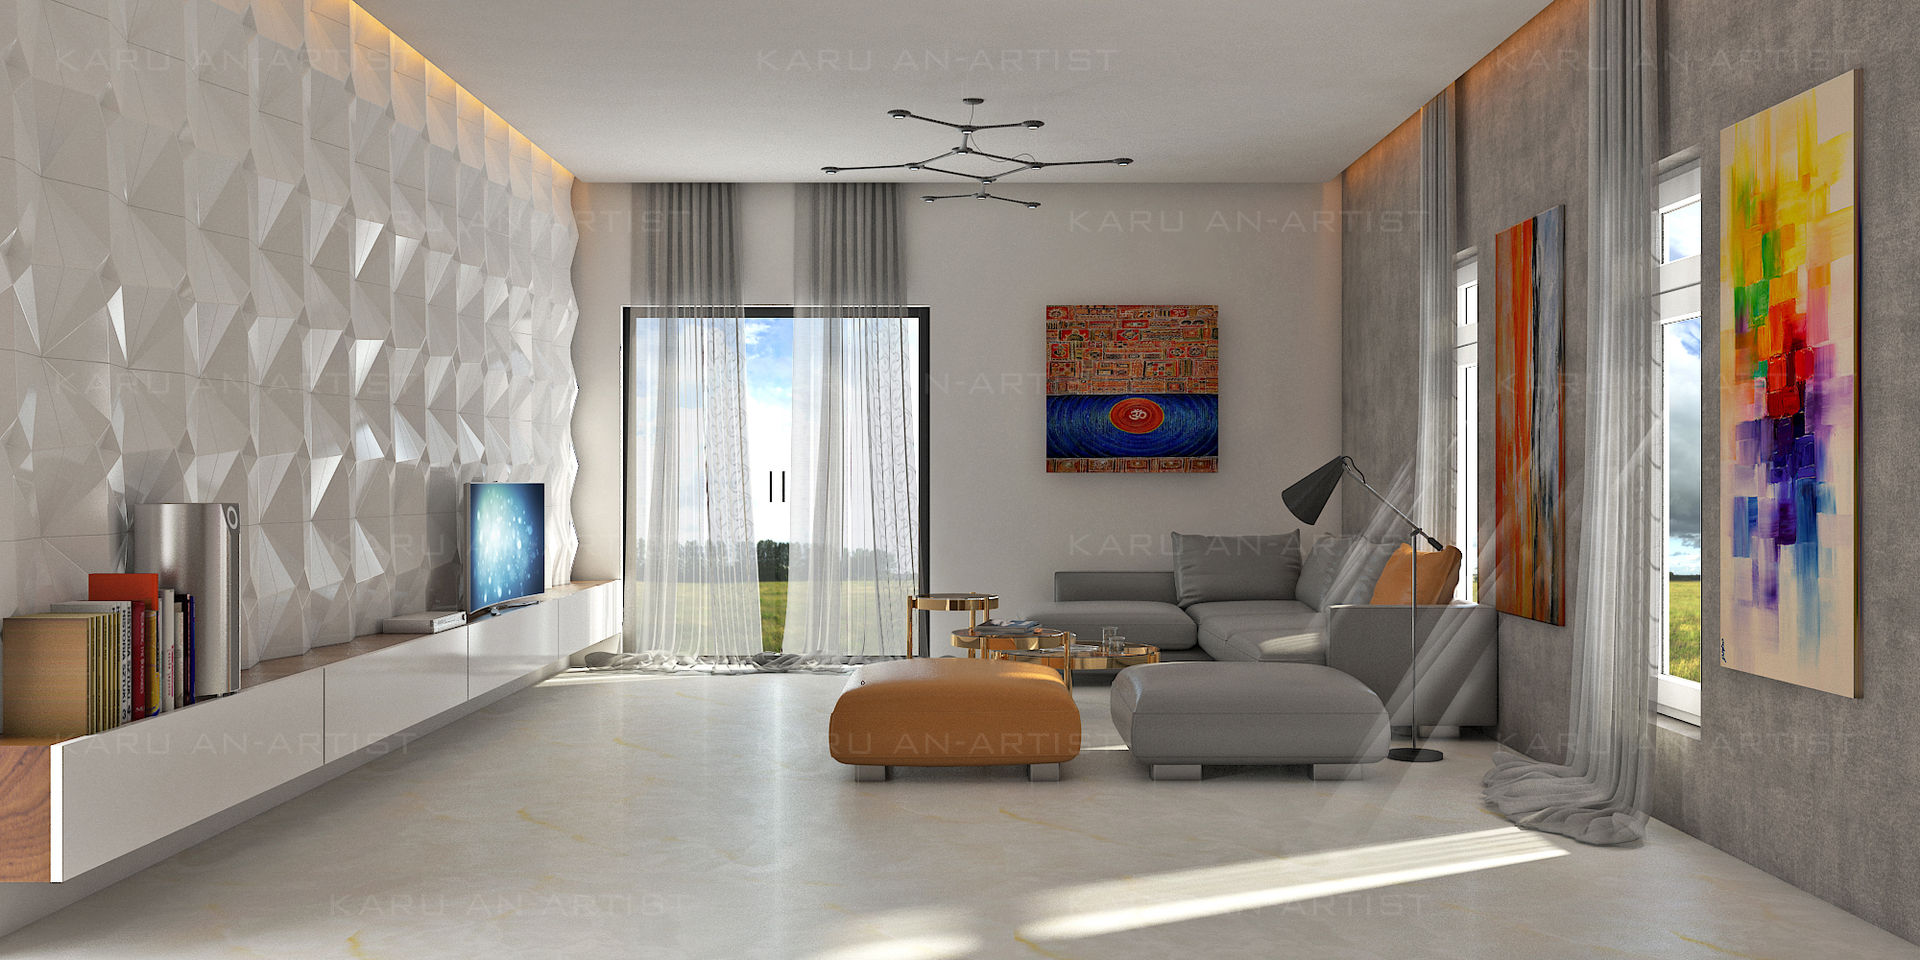 A Modern Living Room, KARU AN ARTIST KARU AN ARTIST Гостиная в стиле модерн